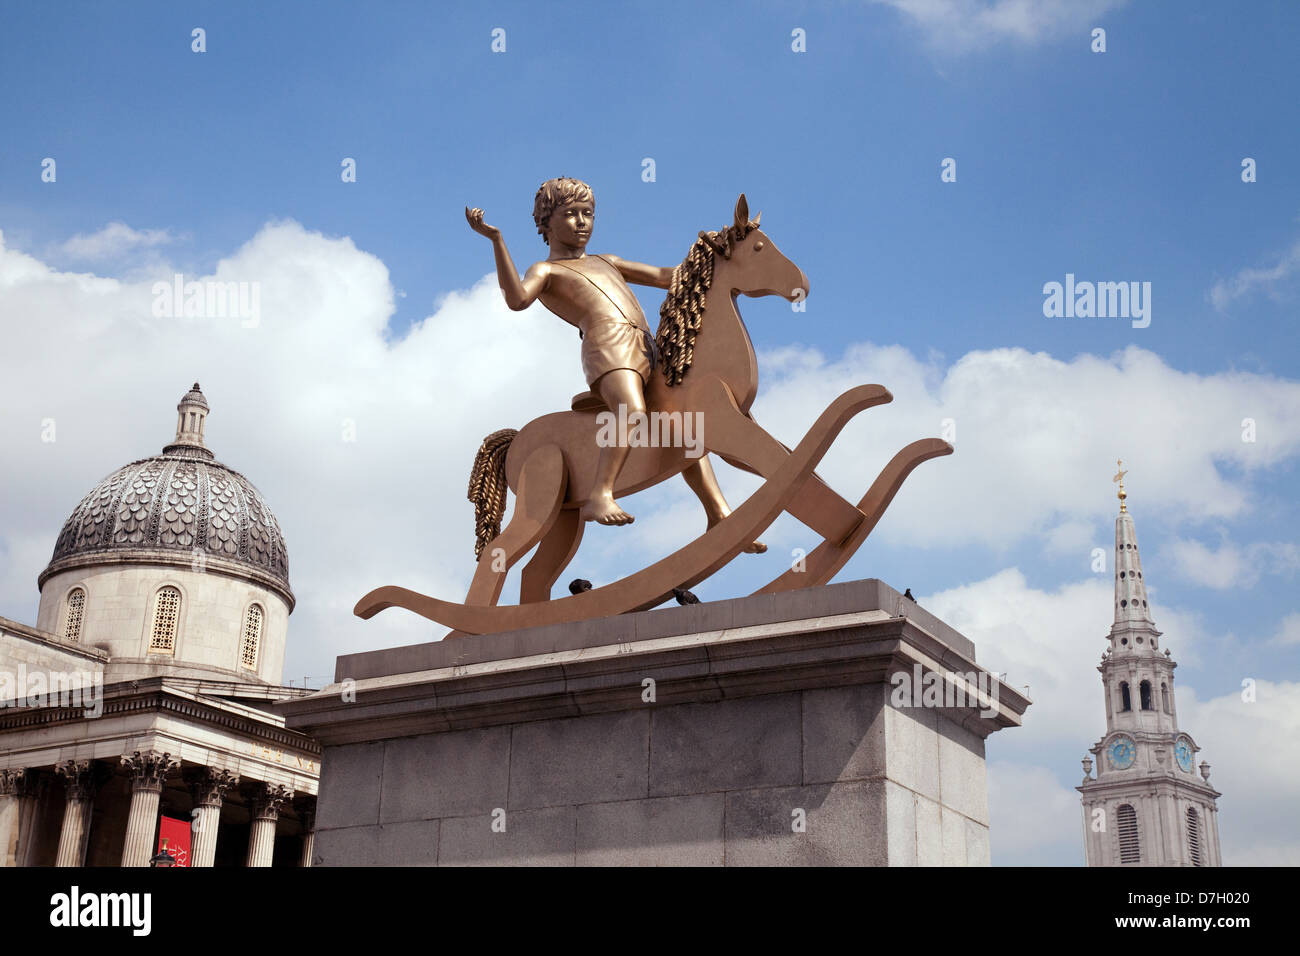 Les structures de pouvoir - une statue en bronze d'un enfant sur un cheval à bascule, sur le quatrième Socle, Trafalgar Square London UK 2013 Banque D'Images